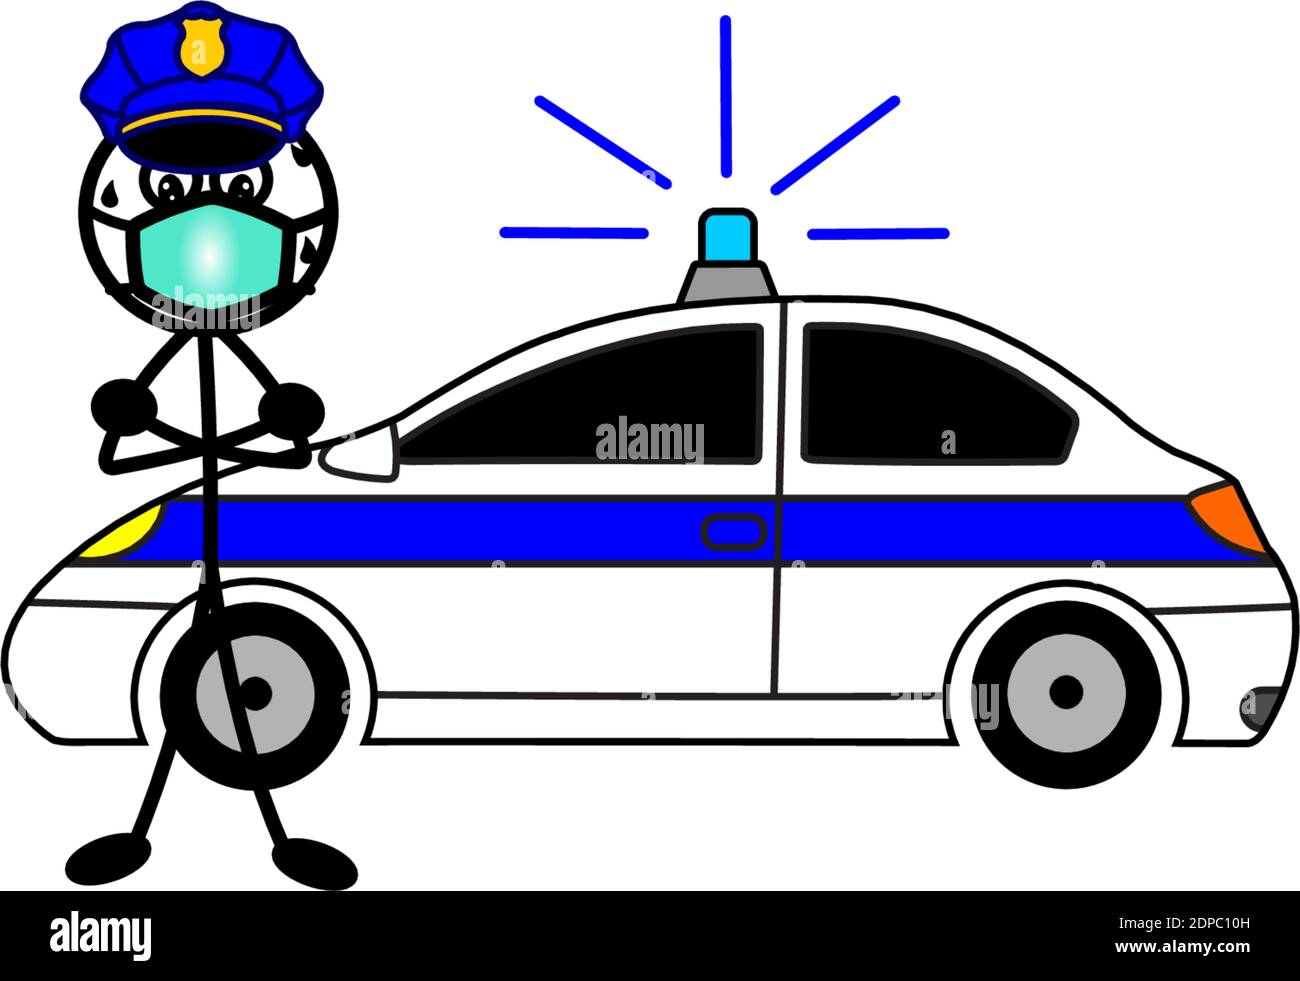 Police, voiture de police, en temps de Corona ou pandémie covid 19 avec une bouche Illustration de Vecteur